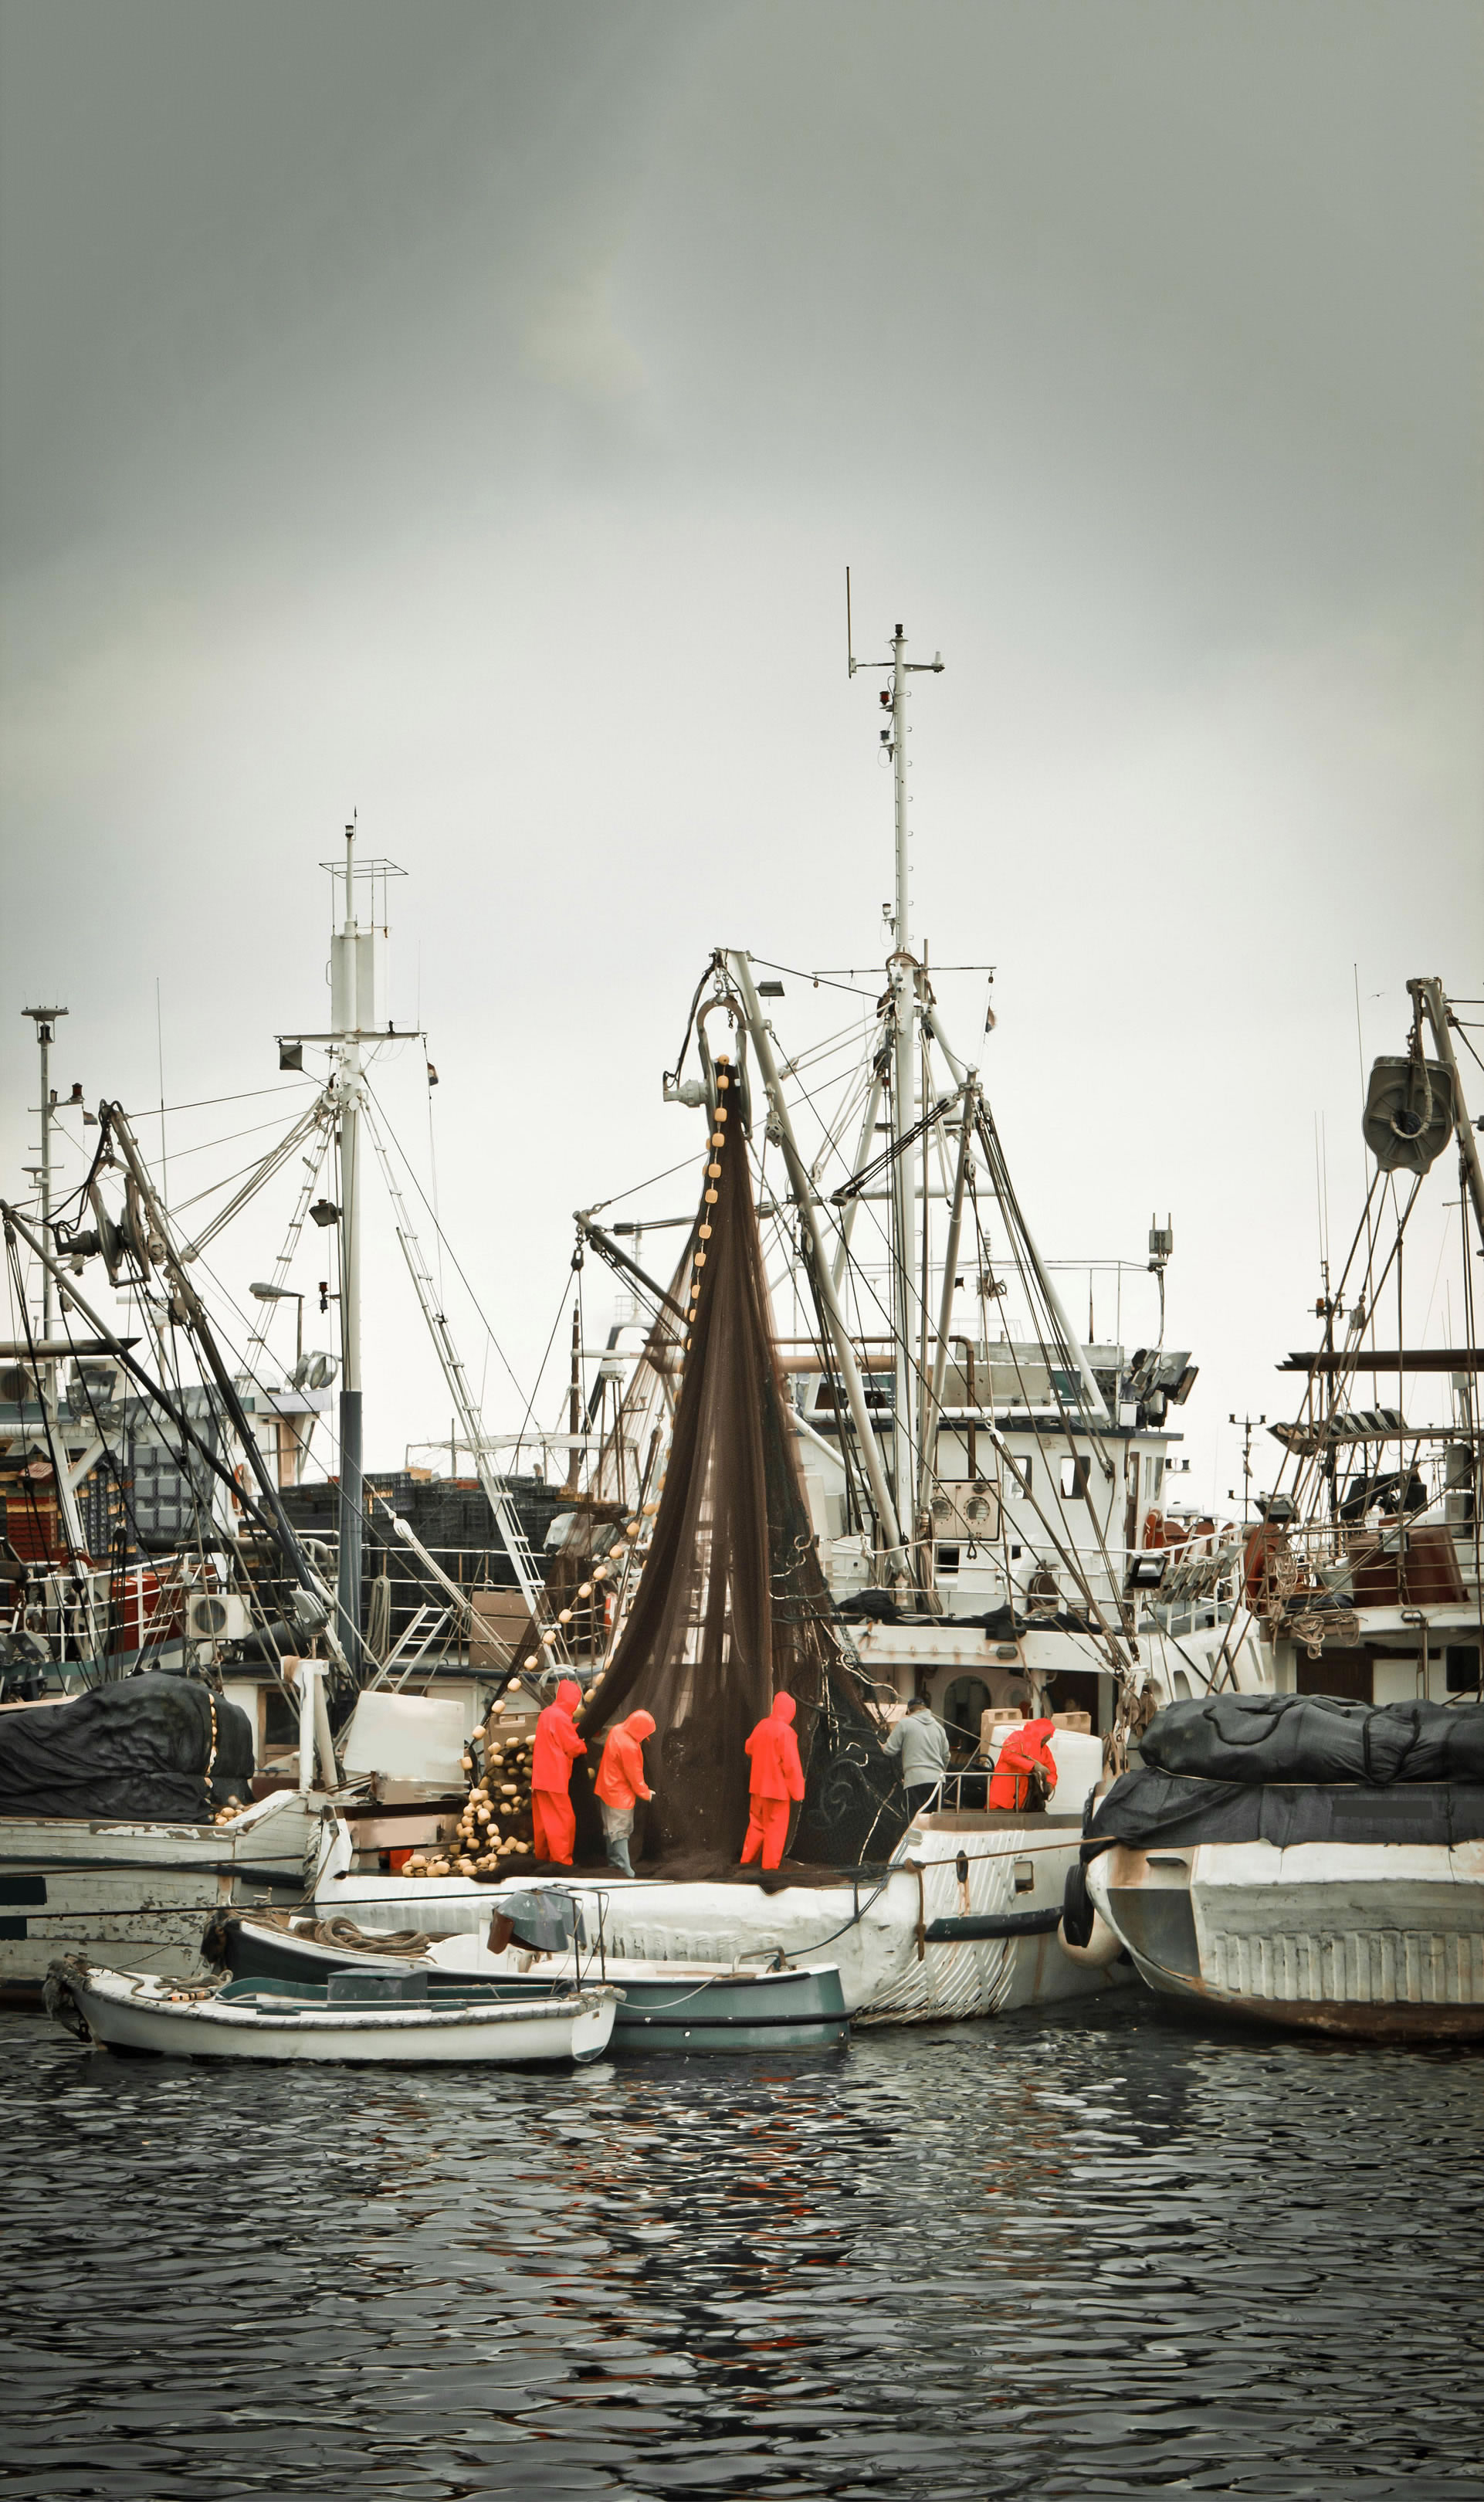 Pêcheurs en tenue professionnelle s’occupant d’un filet de pêche sur un chalutier, au milieu d’une flotte de bateaux dans un port de pêche.